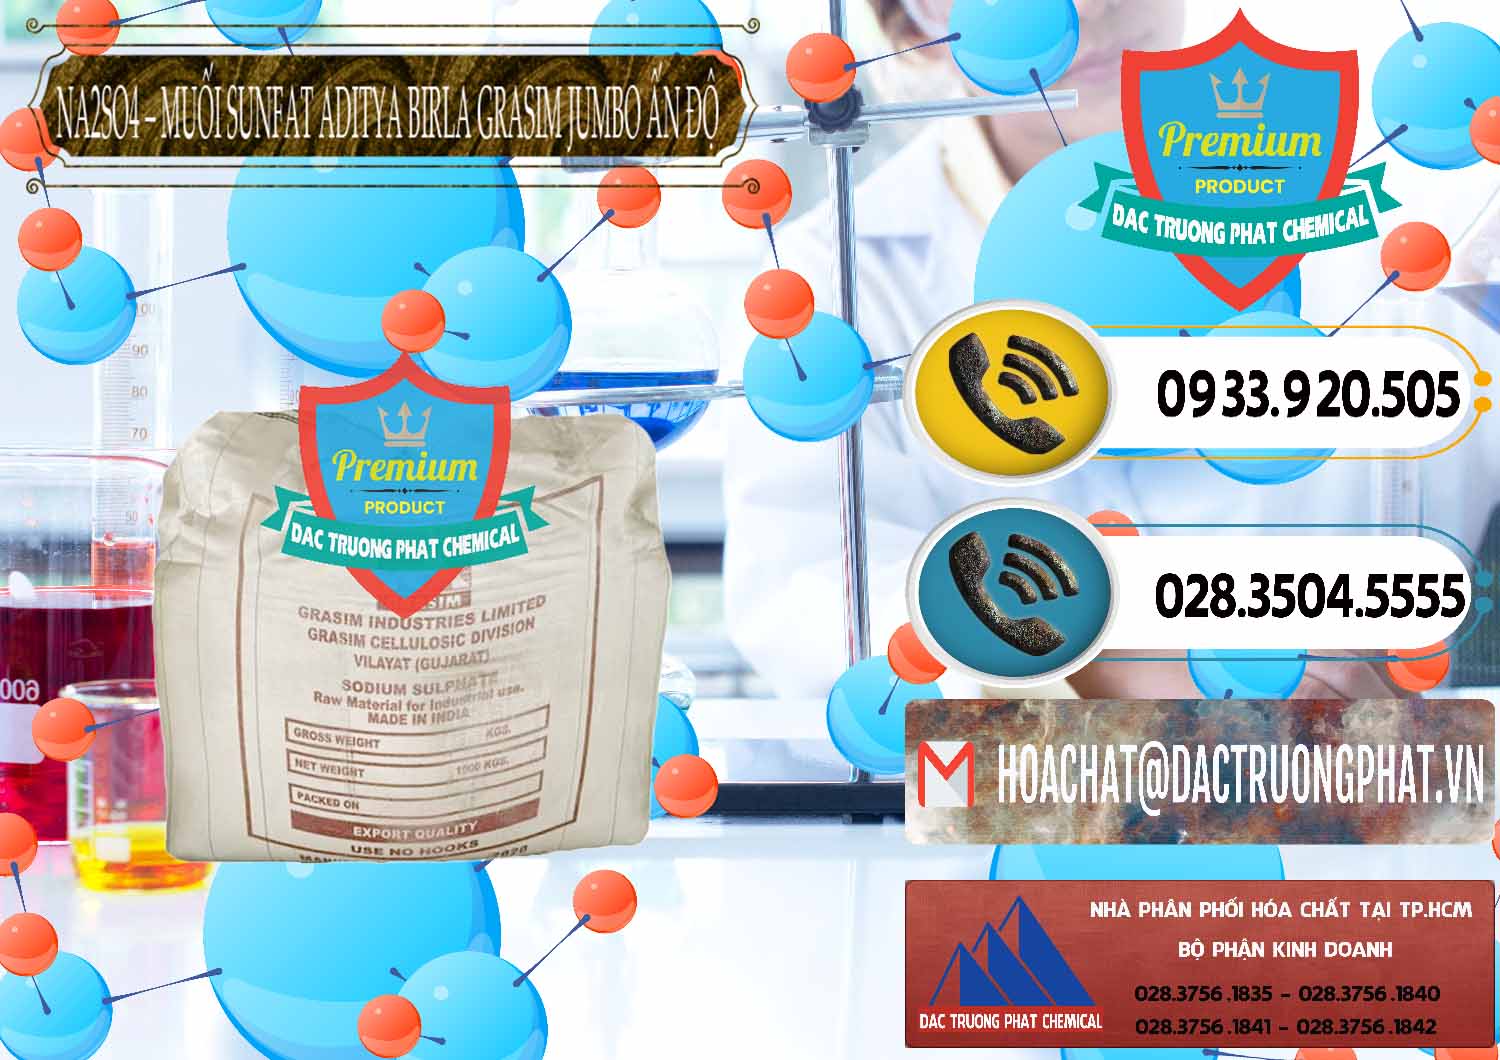 Cung cấp & bán Sodium Sulphate - Muối Sunfat Na2SO4 Jumbo Bành Aditya Birla Grasim Ấn Độ India - 0357 - Cty chuyên phân phối _ nhập khẩu hóa chất tại TP.HCM - hoachatdetnhuom.vn